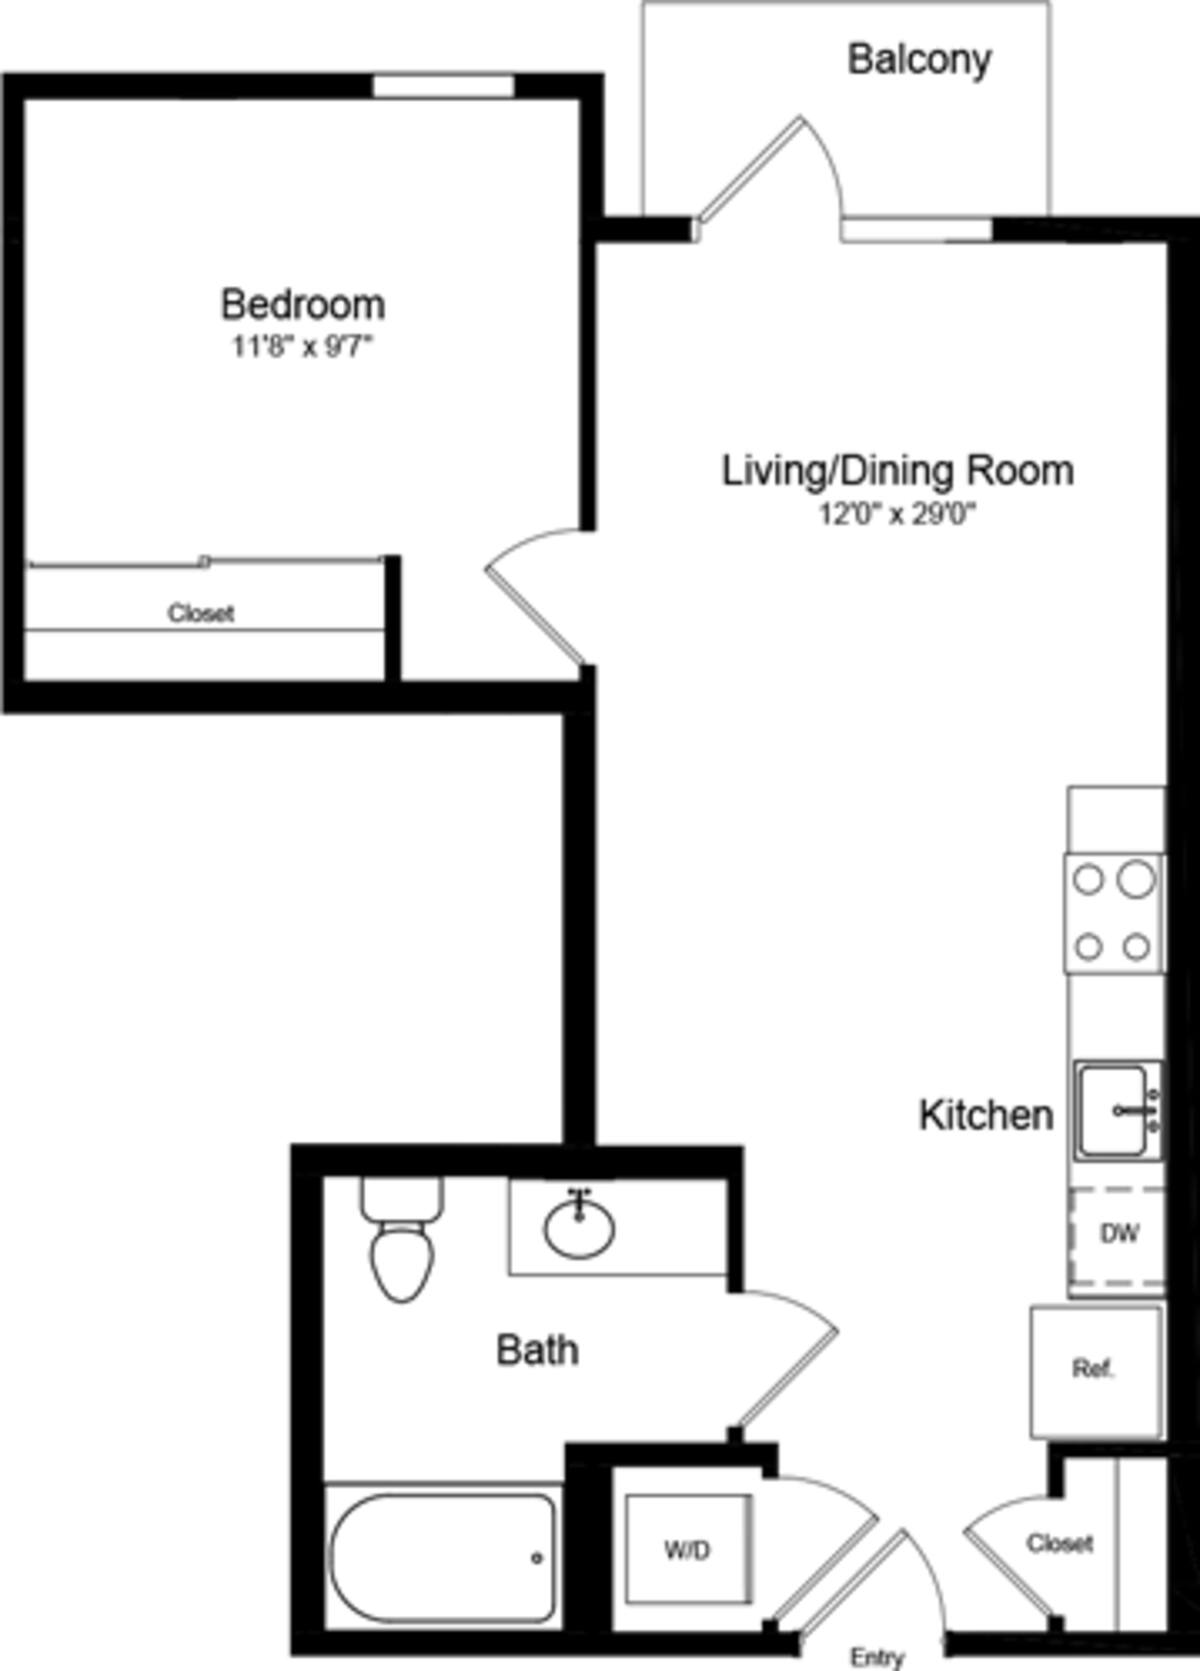 Floorplan diagram for 1 Bedroom B with Balcony, showing 1 bedroom